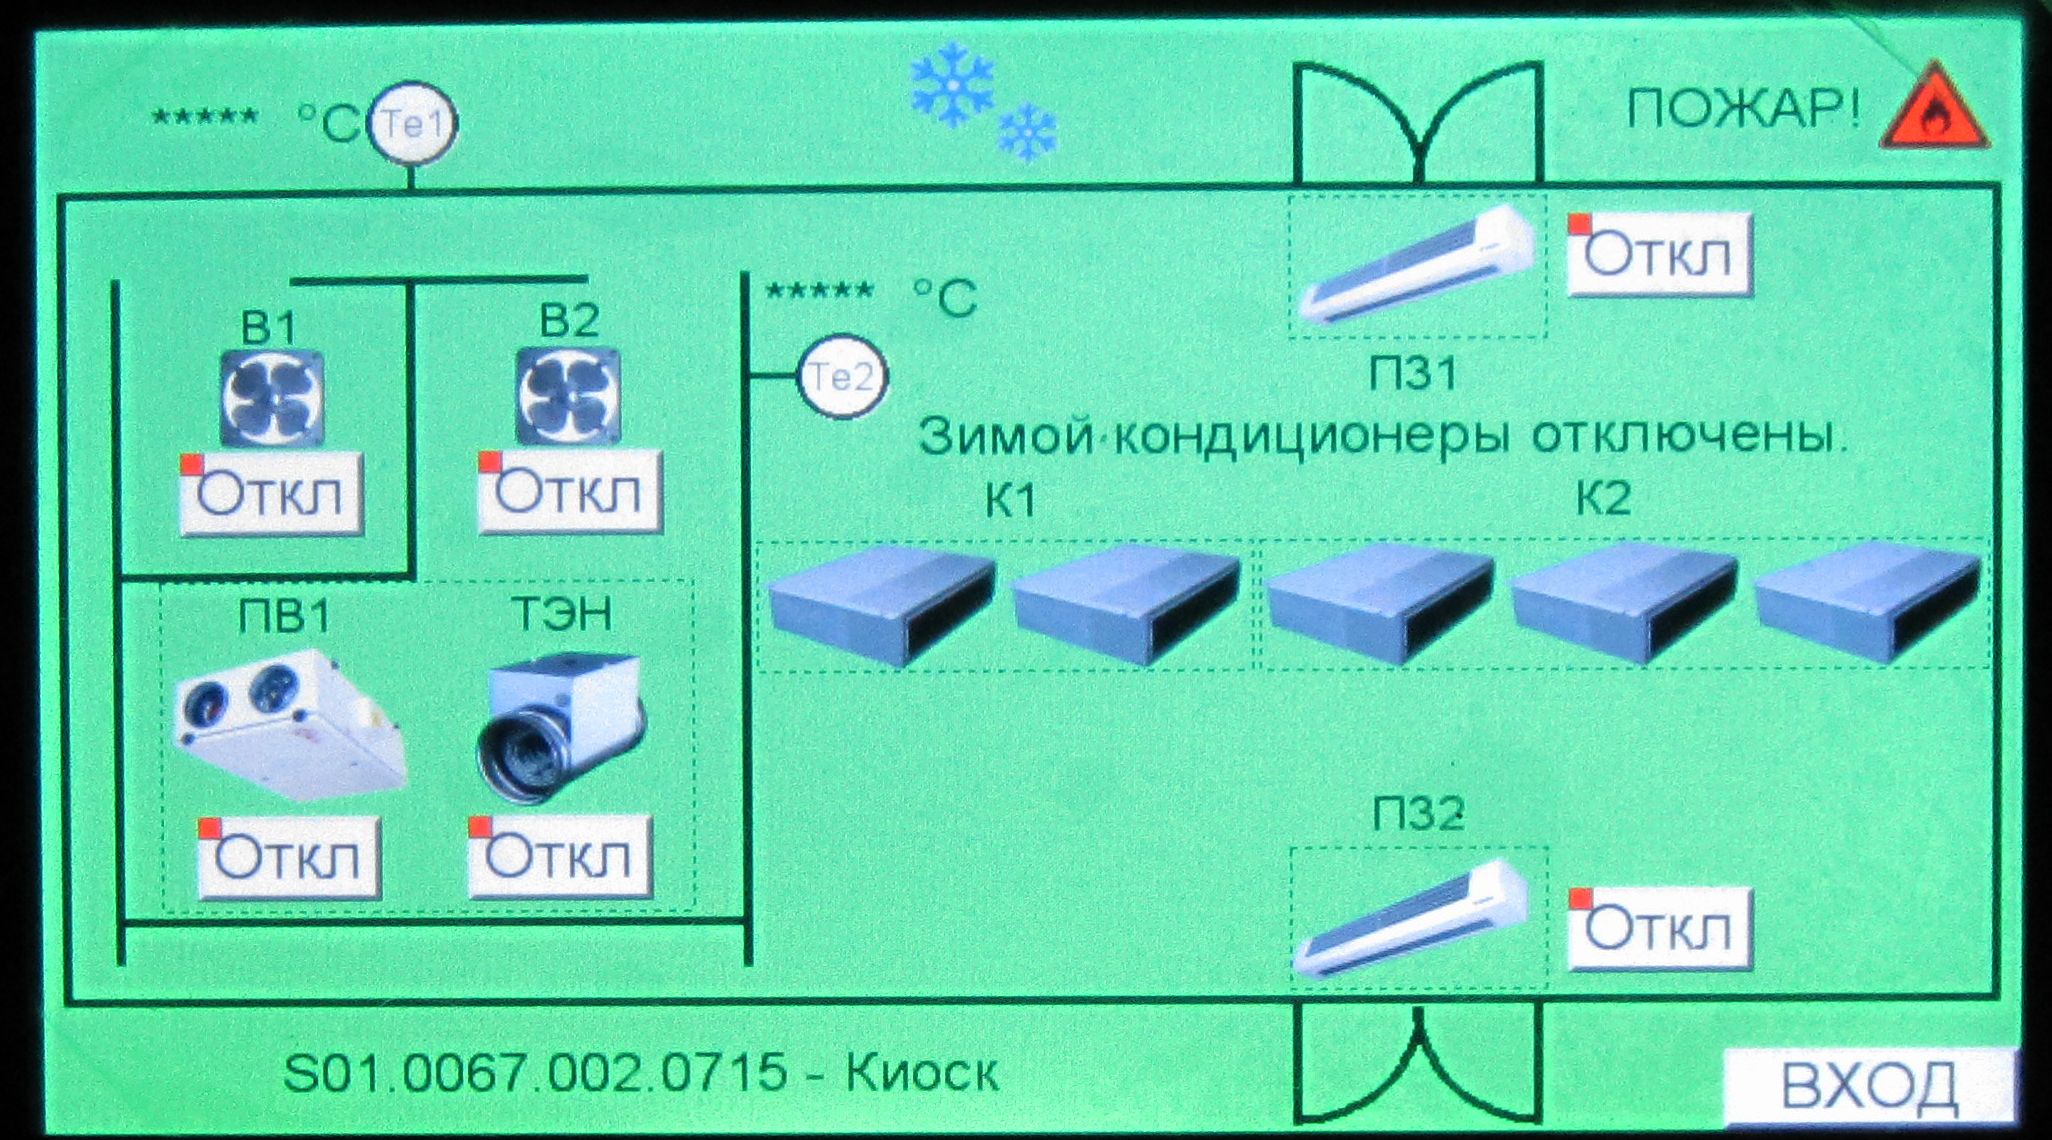 Павильоны на Триумфальной площади в г. Москва, графический сенсорный терминал пользователя. Автоматизация на оборудовании IECON.